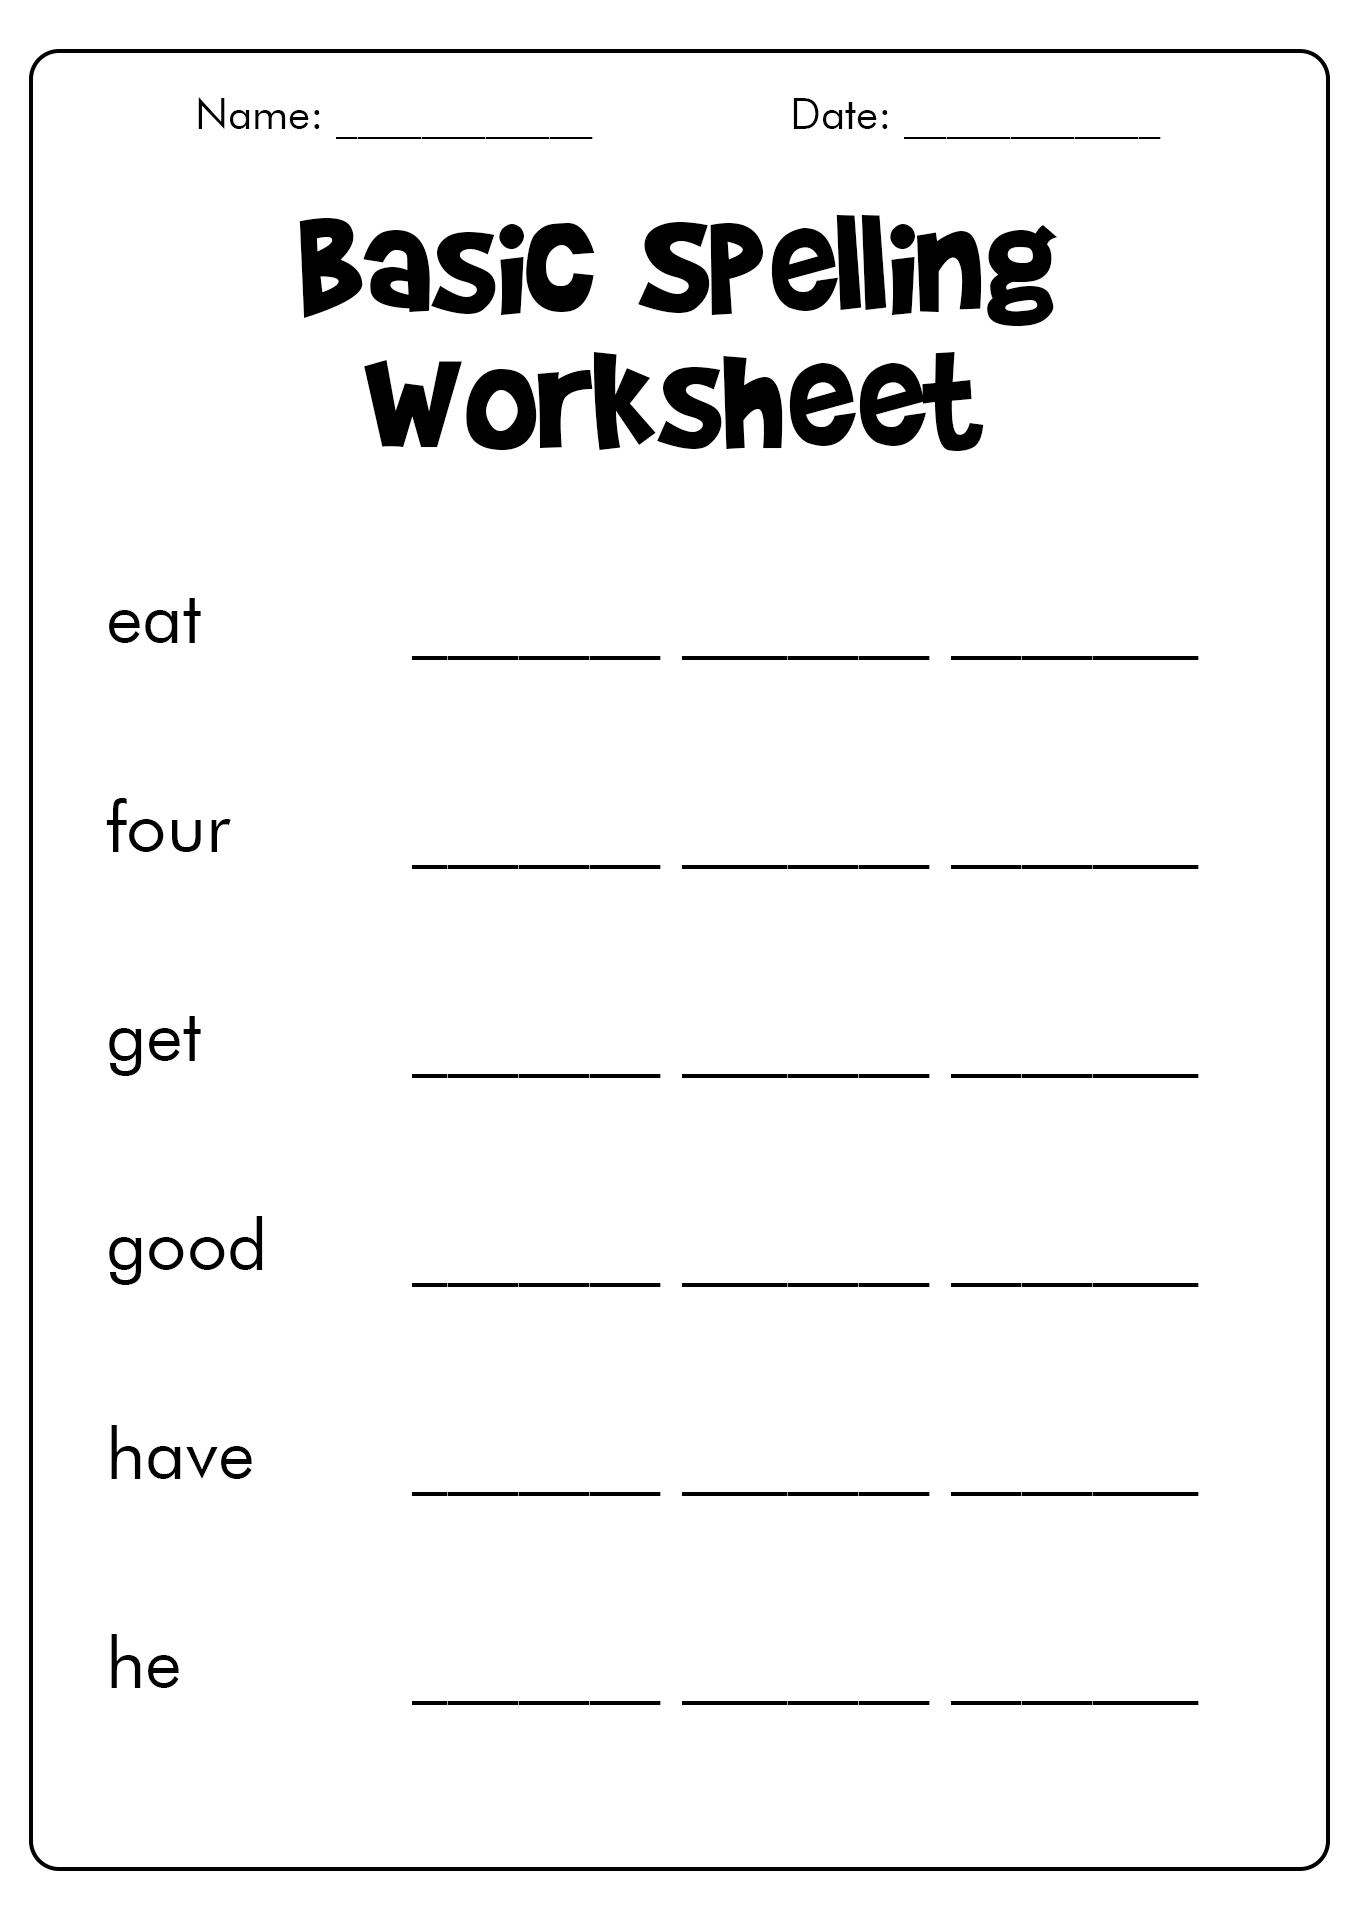 Kindergarten Spelling Test Worksheets Image